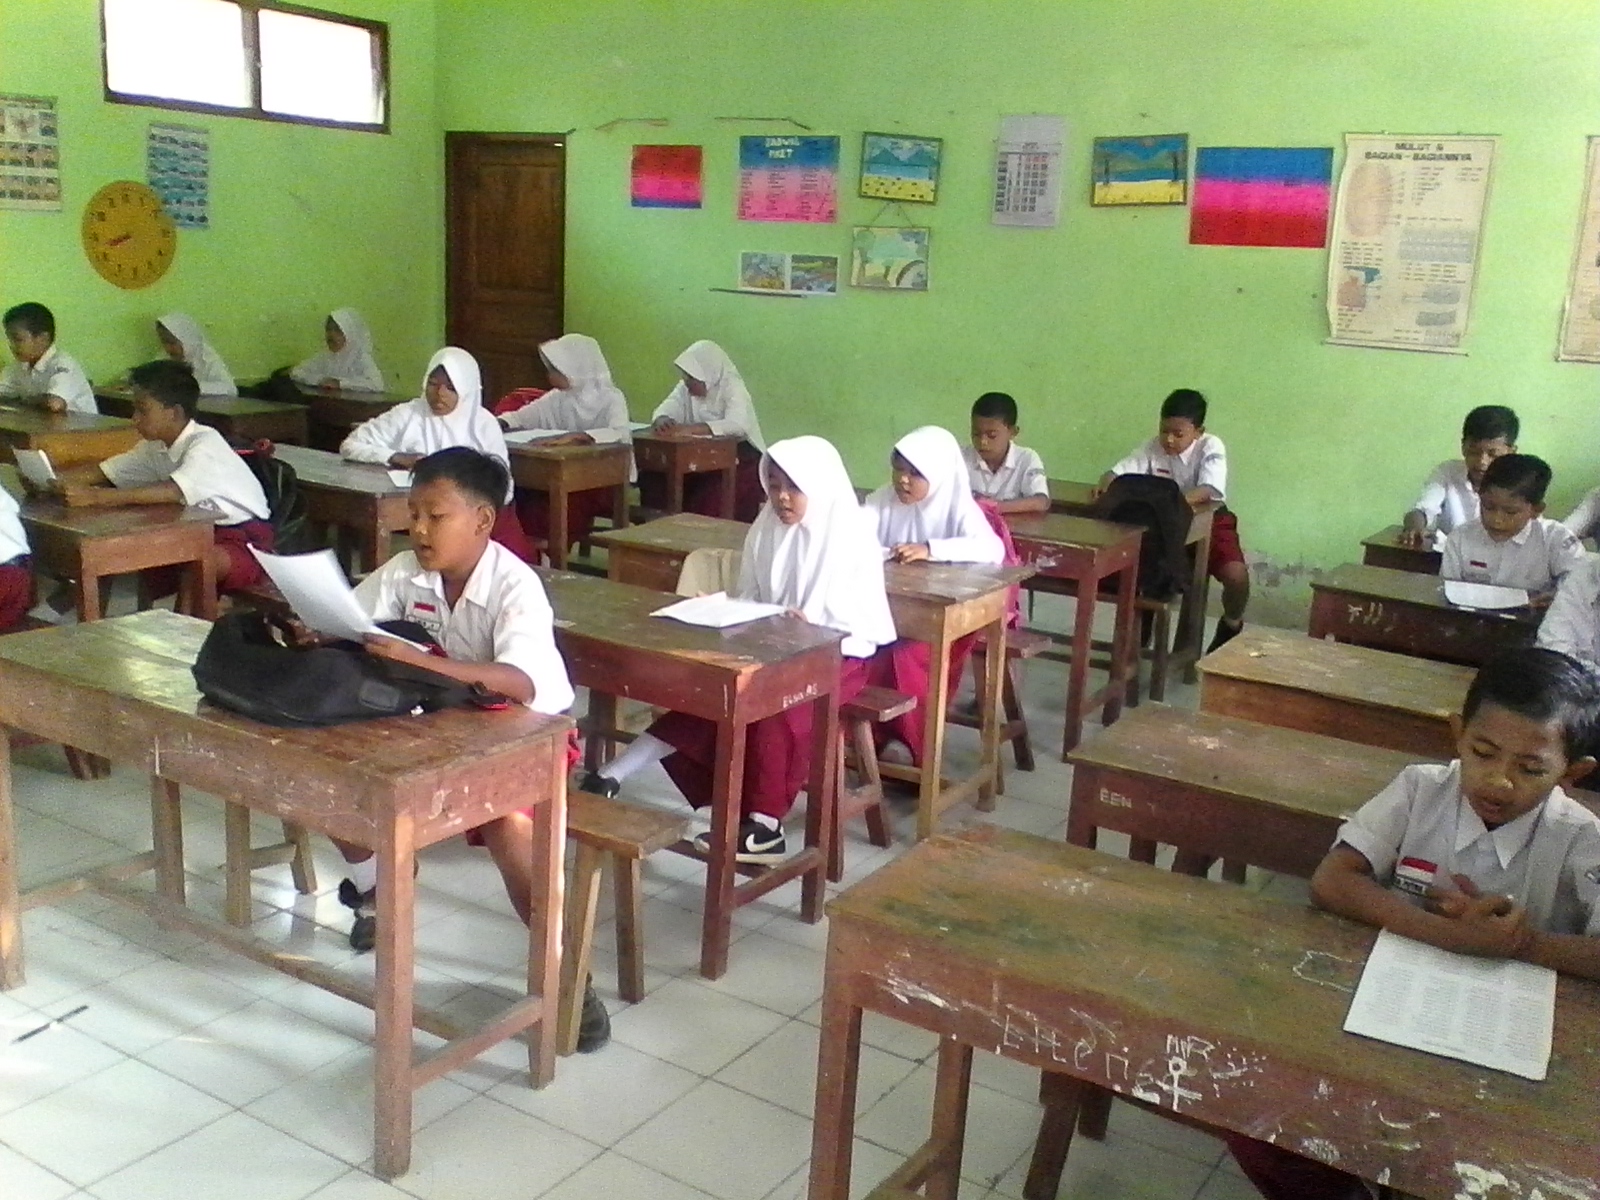 Download Soal dan Kunci Jawaban Siap UAS Bahasa Indonesia Kelas 2 SD Semester 2